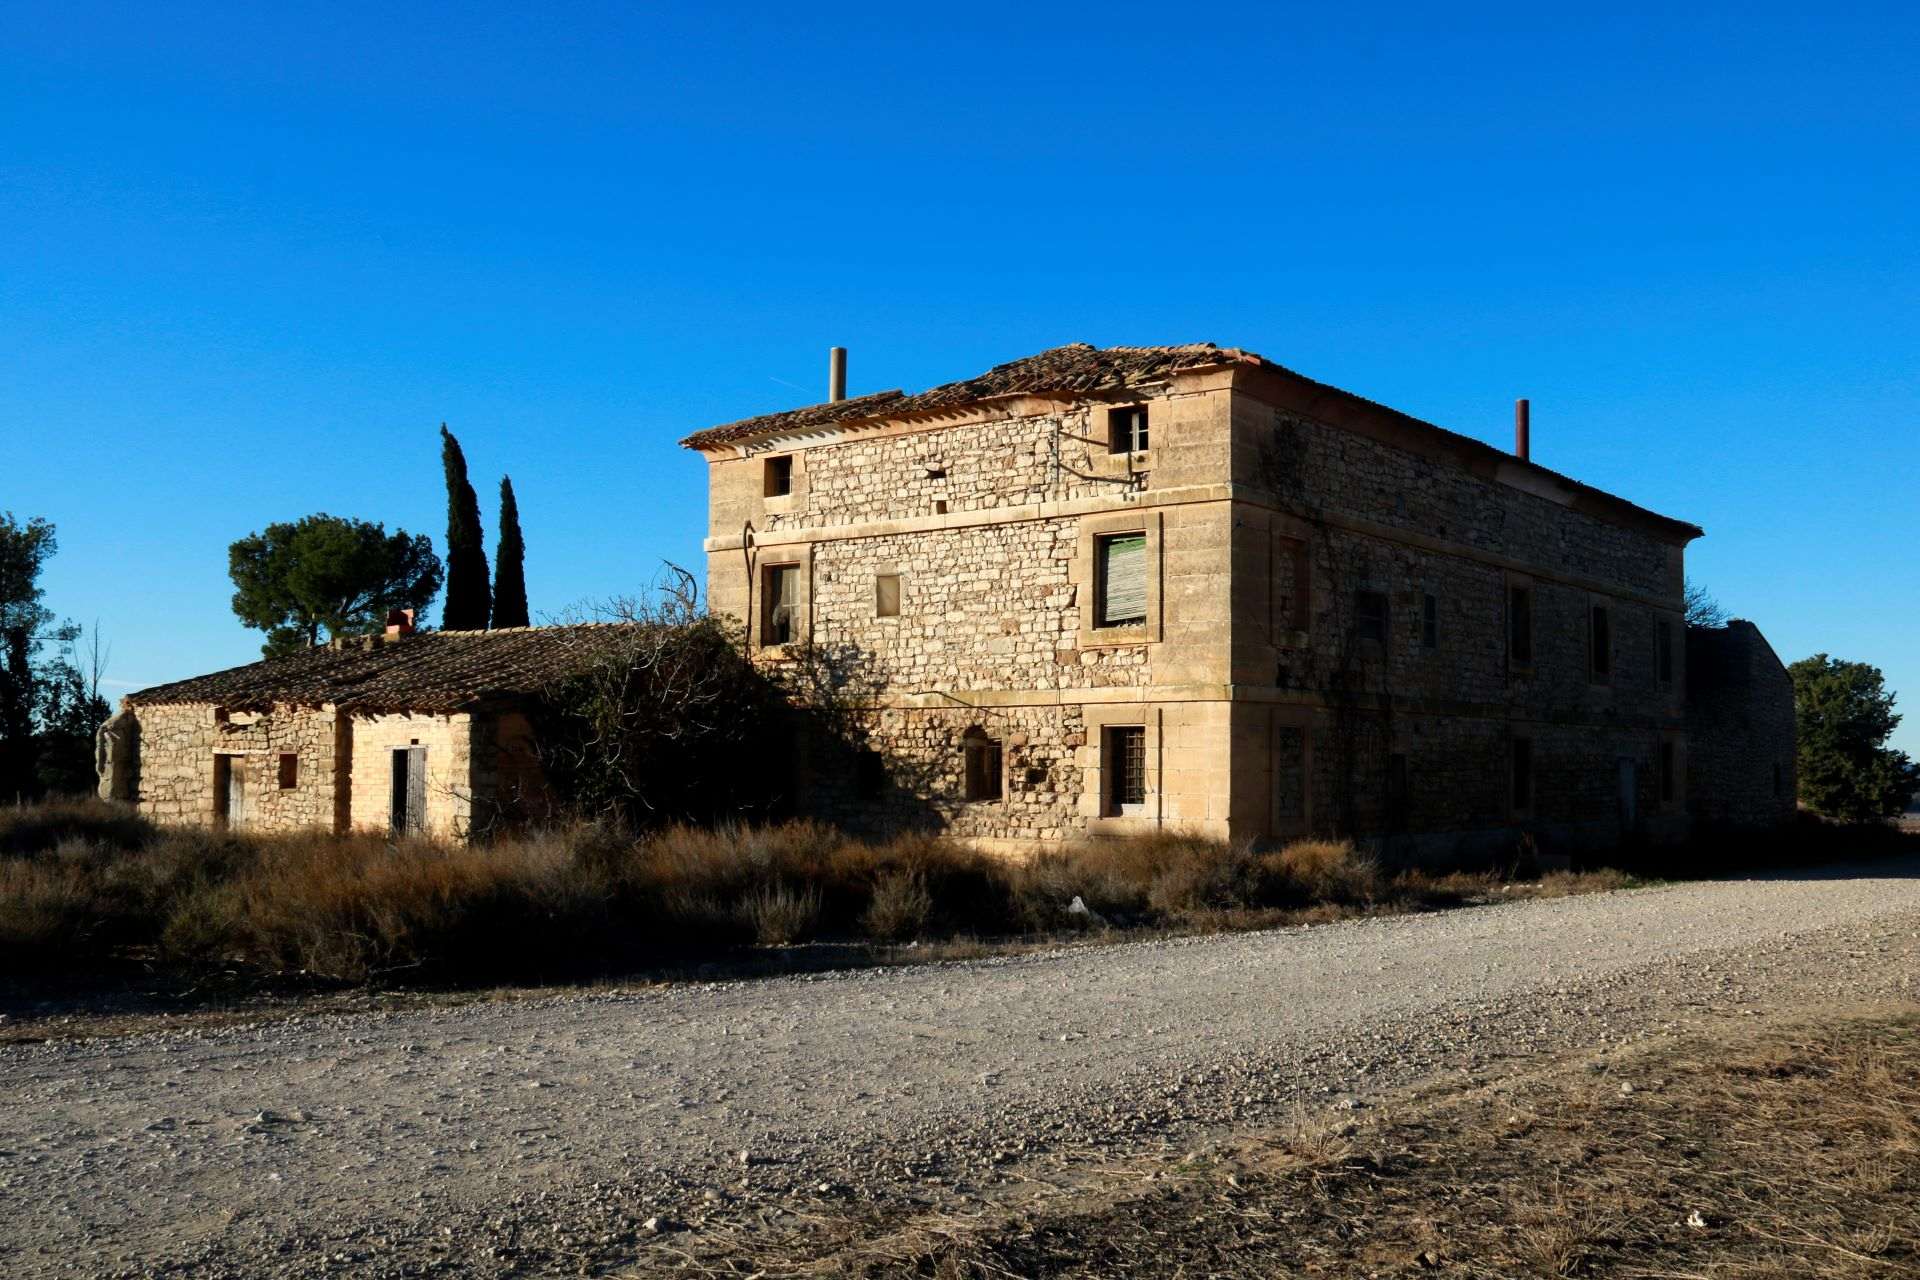 El Govern i la Diputació de Lleida acorden restaurar la casa Vallmanya de Francesc Macià